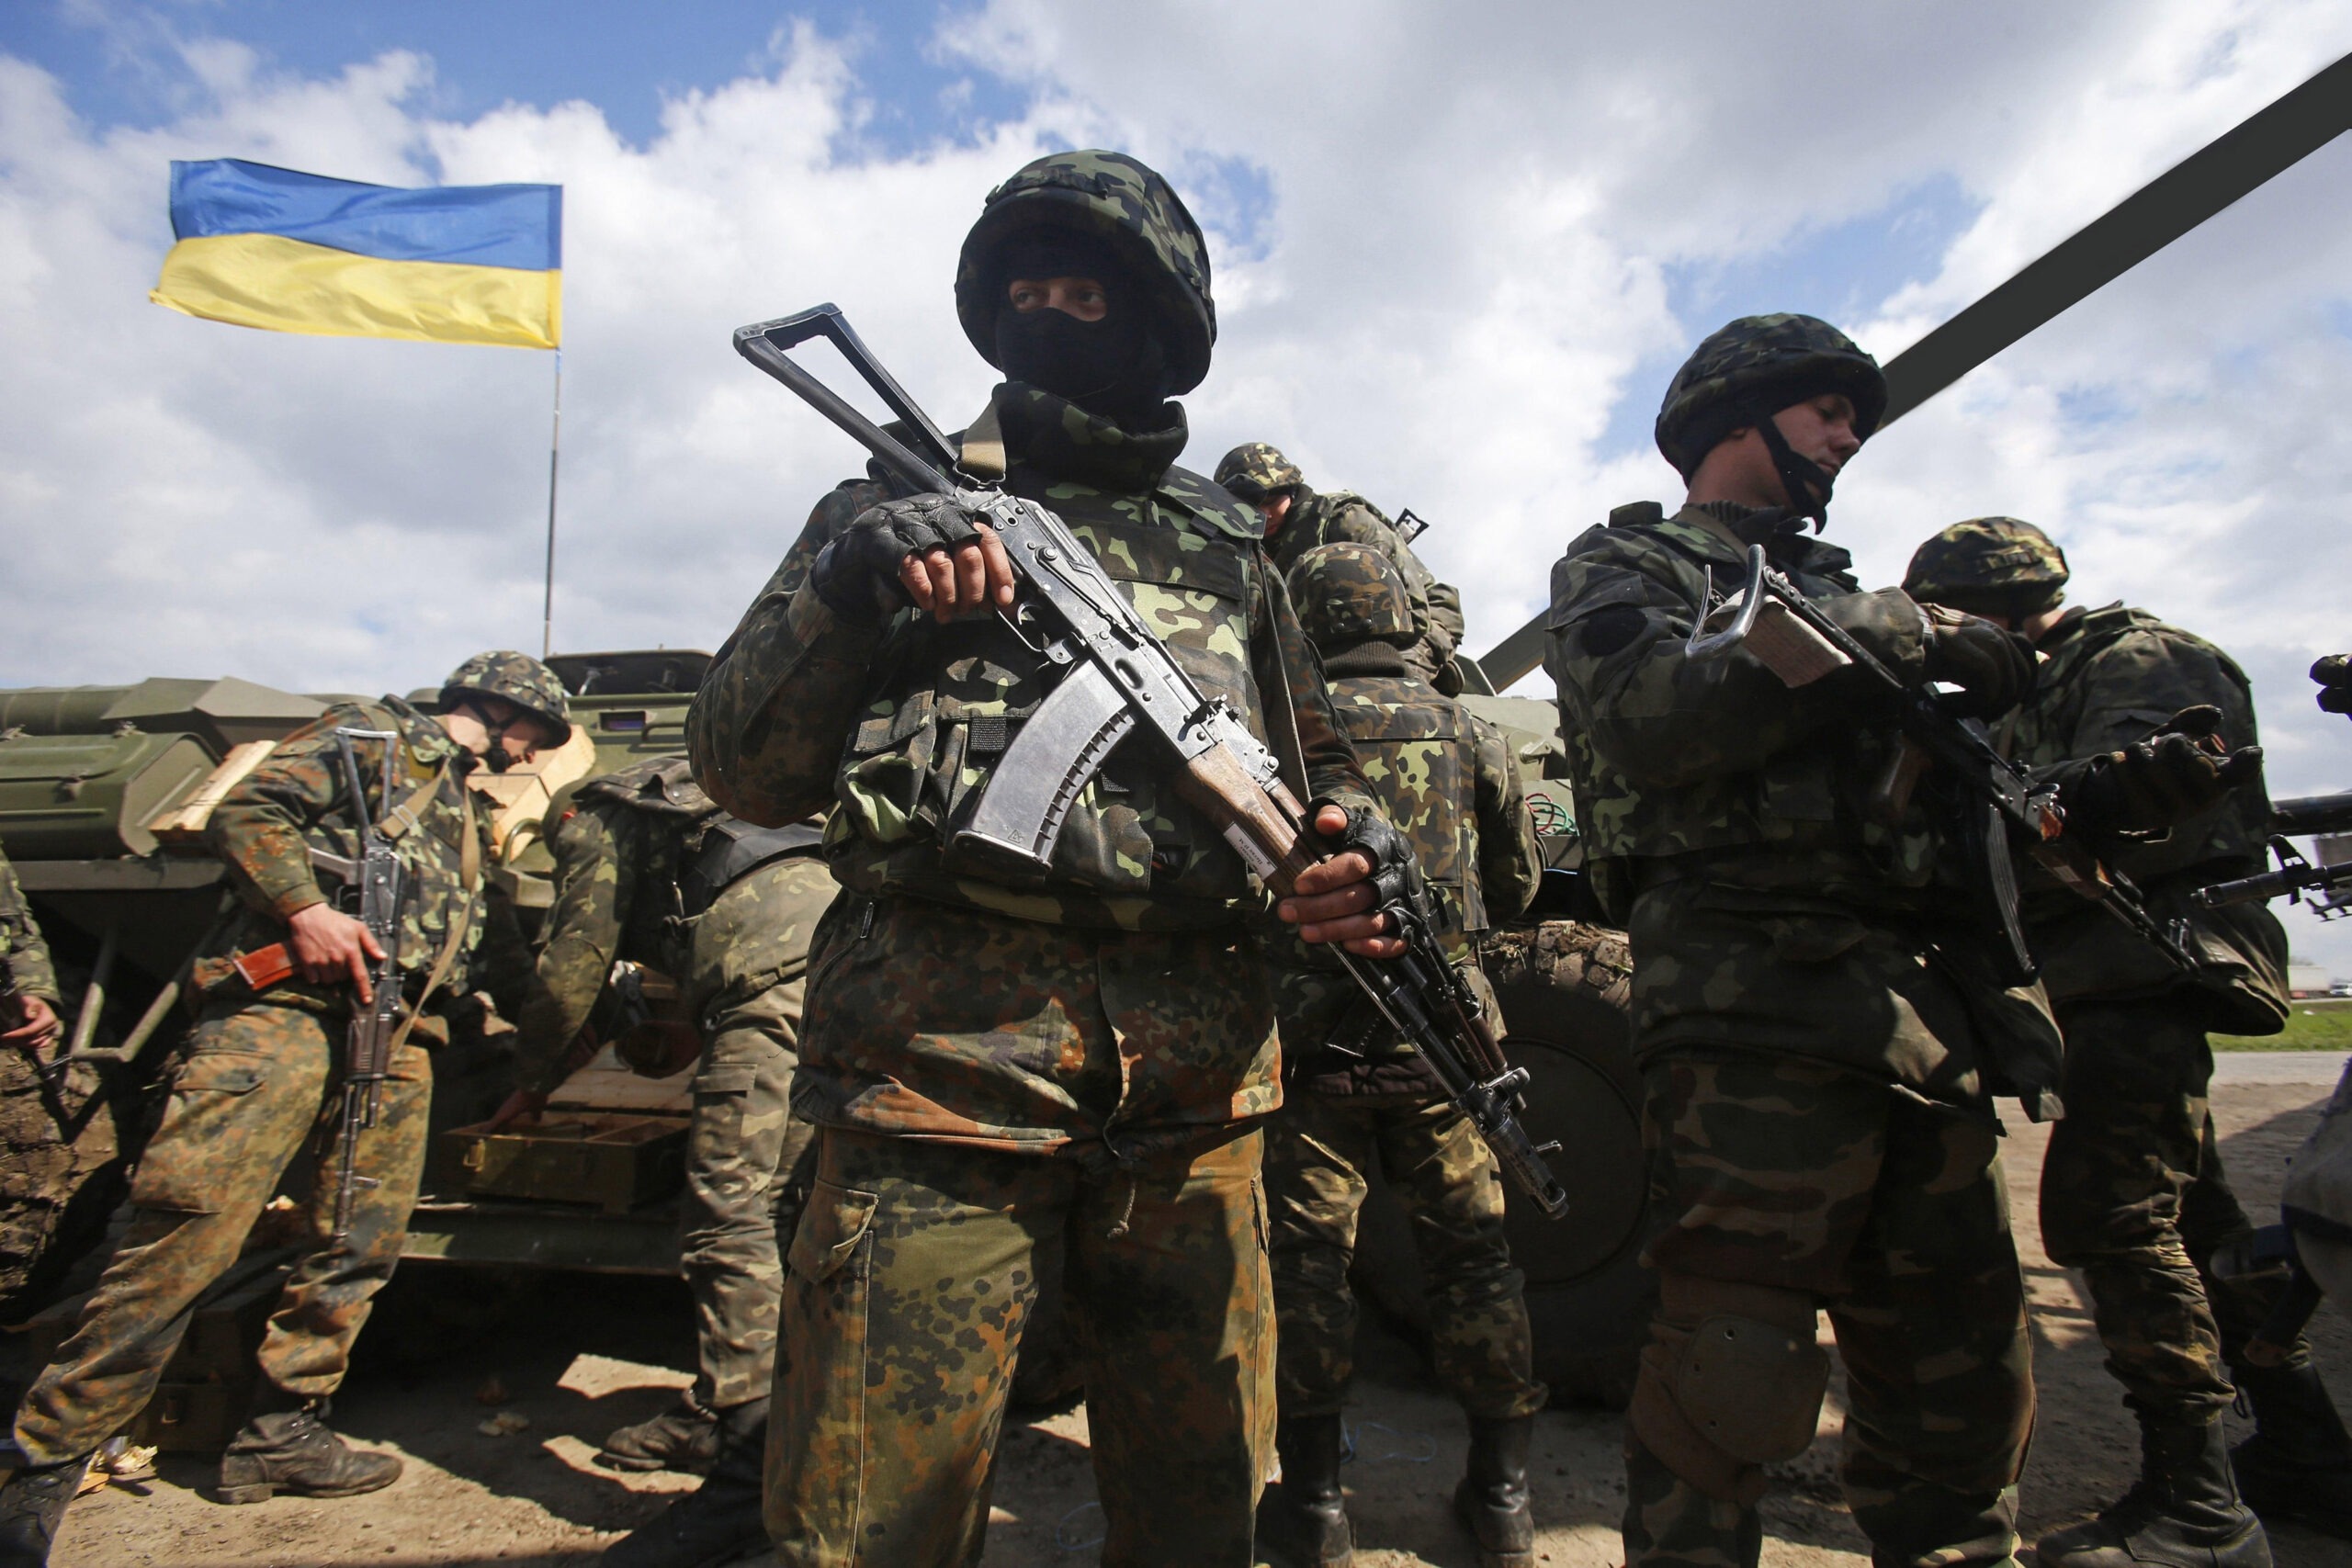 Ukraine Recaptures Parts Of Donetsk